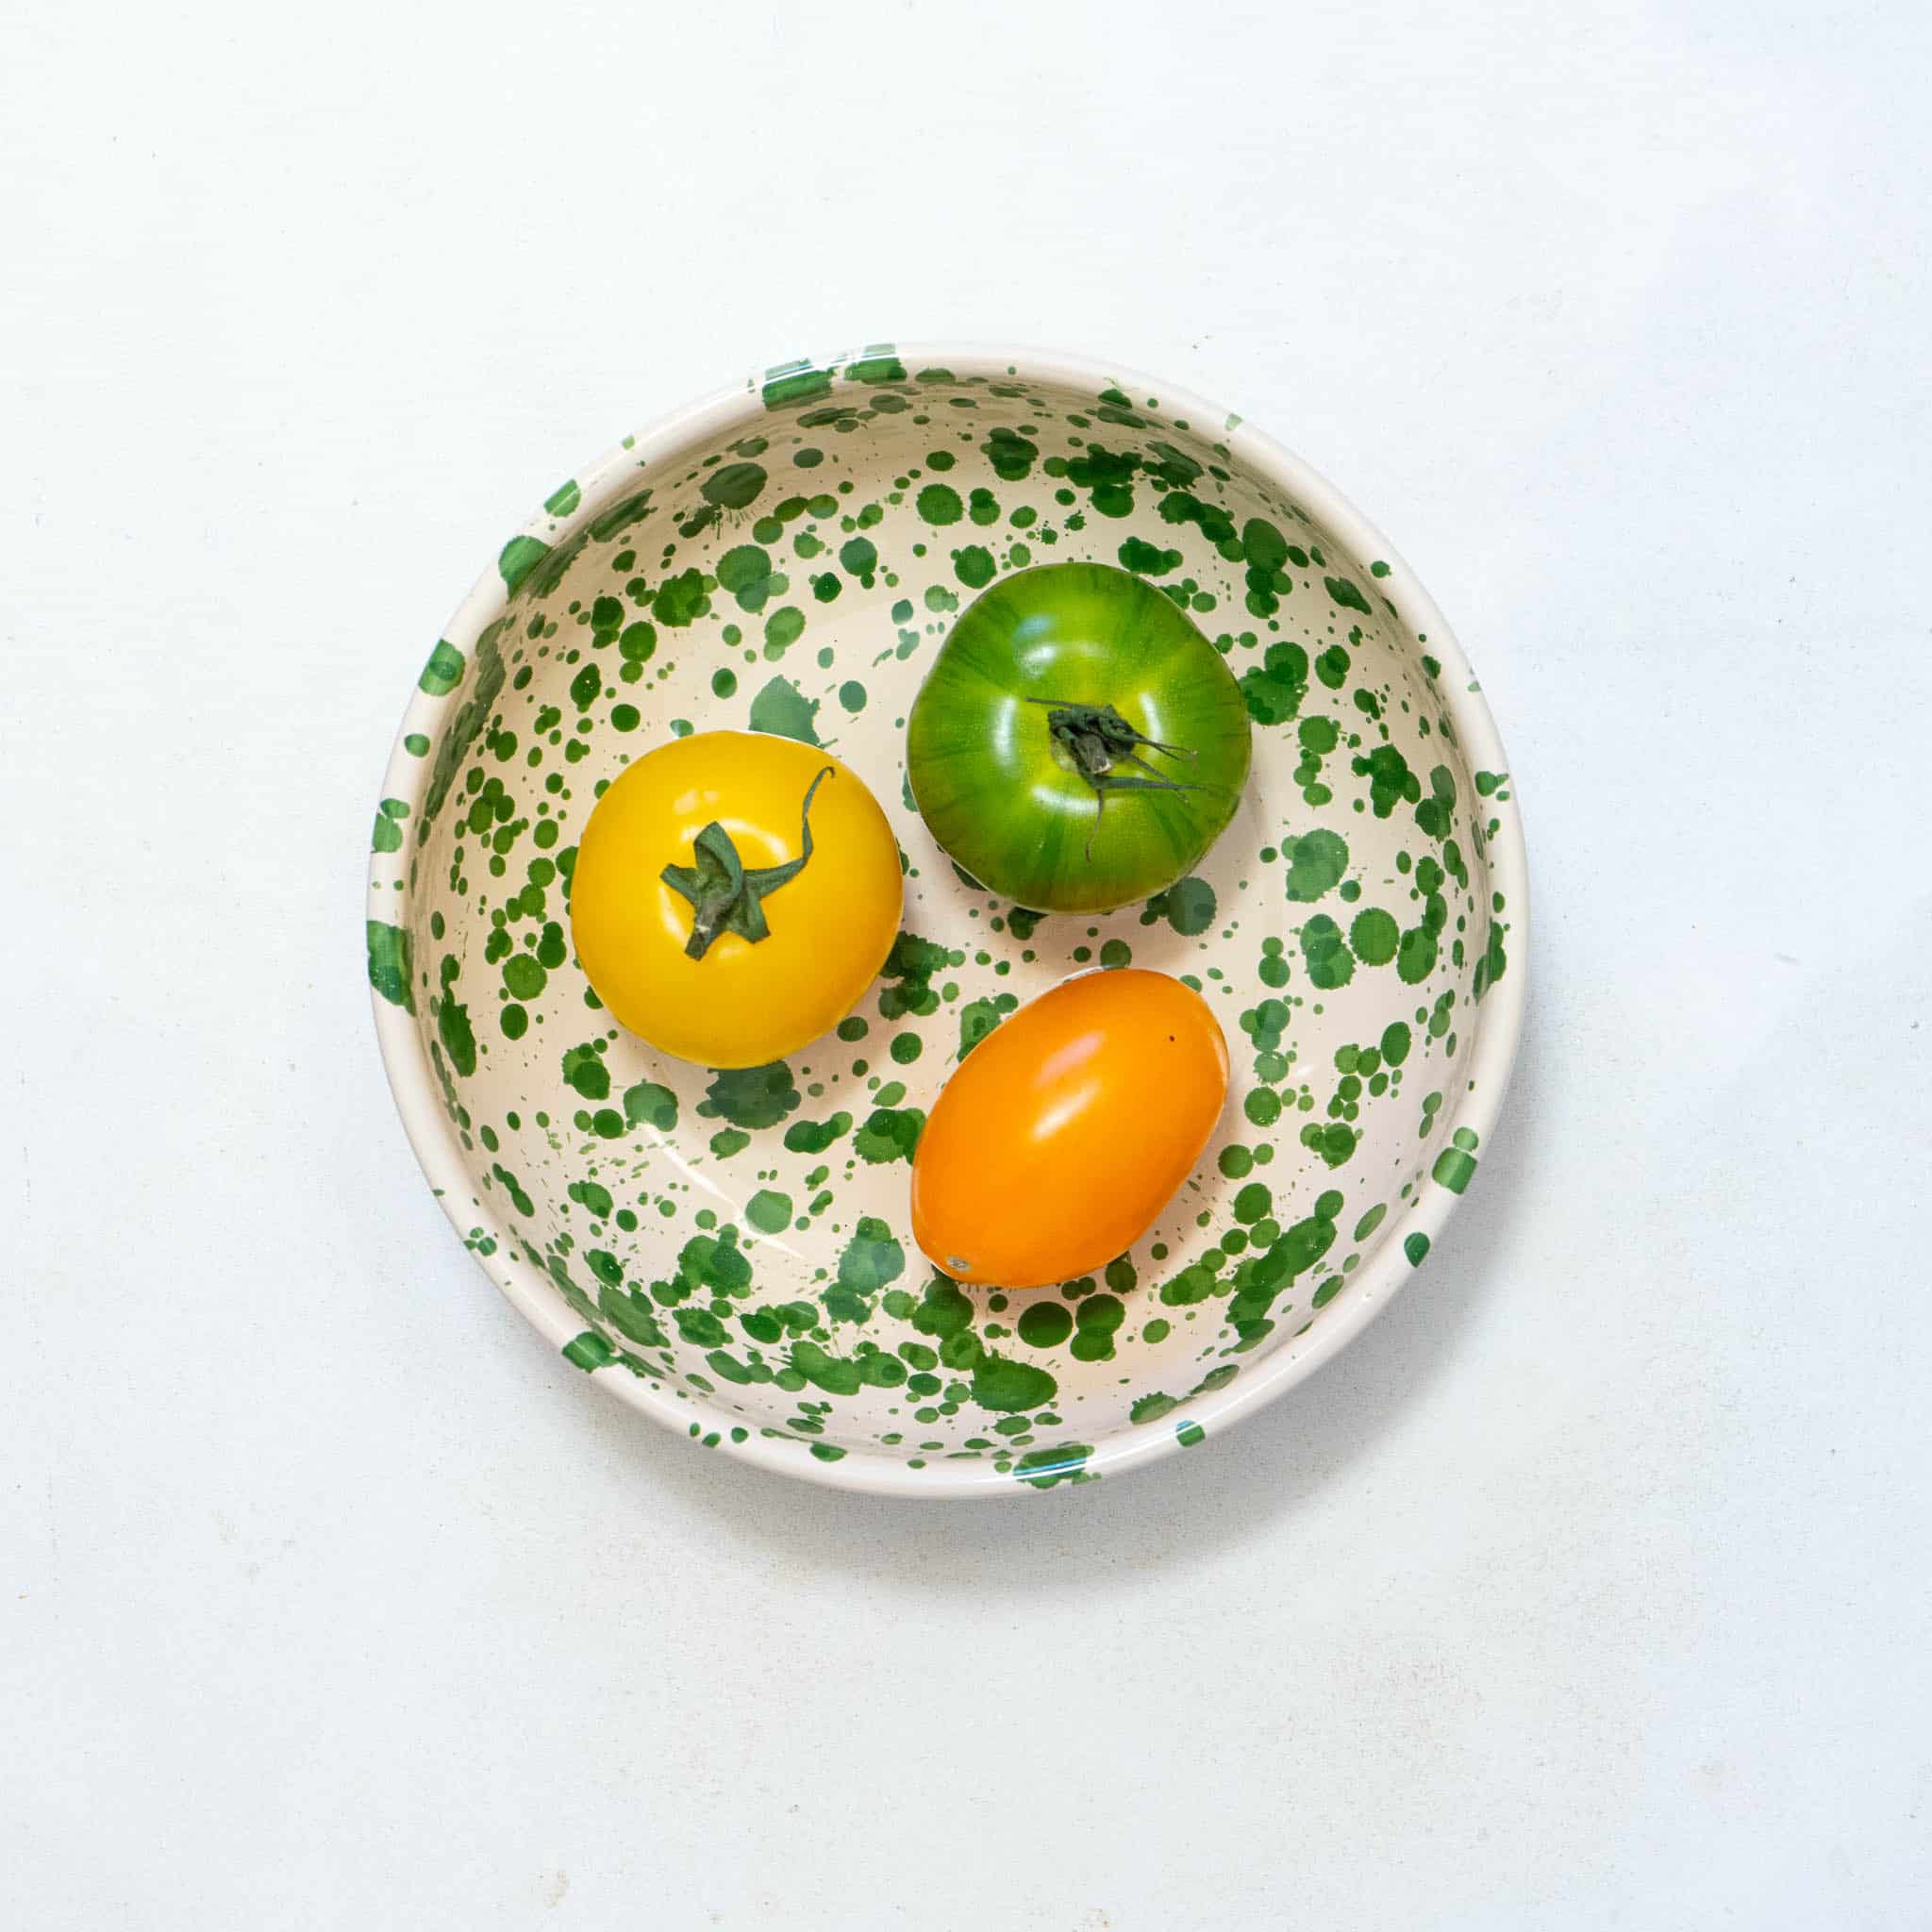 Puglia Green Splatter Bowl, 19cm